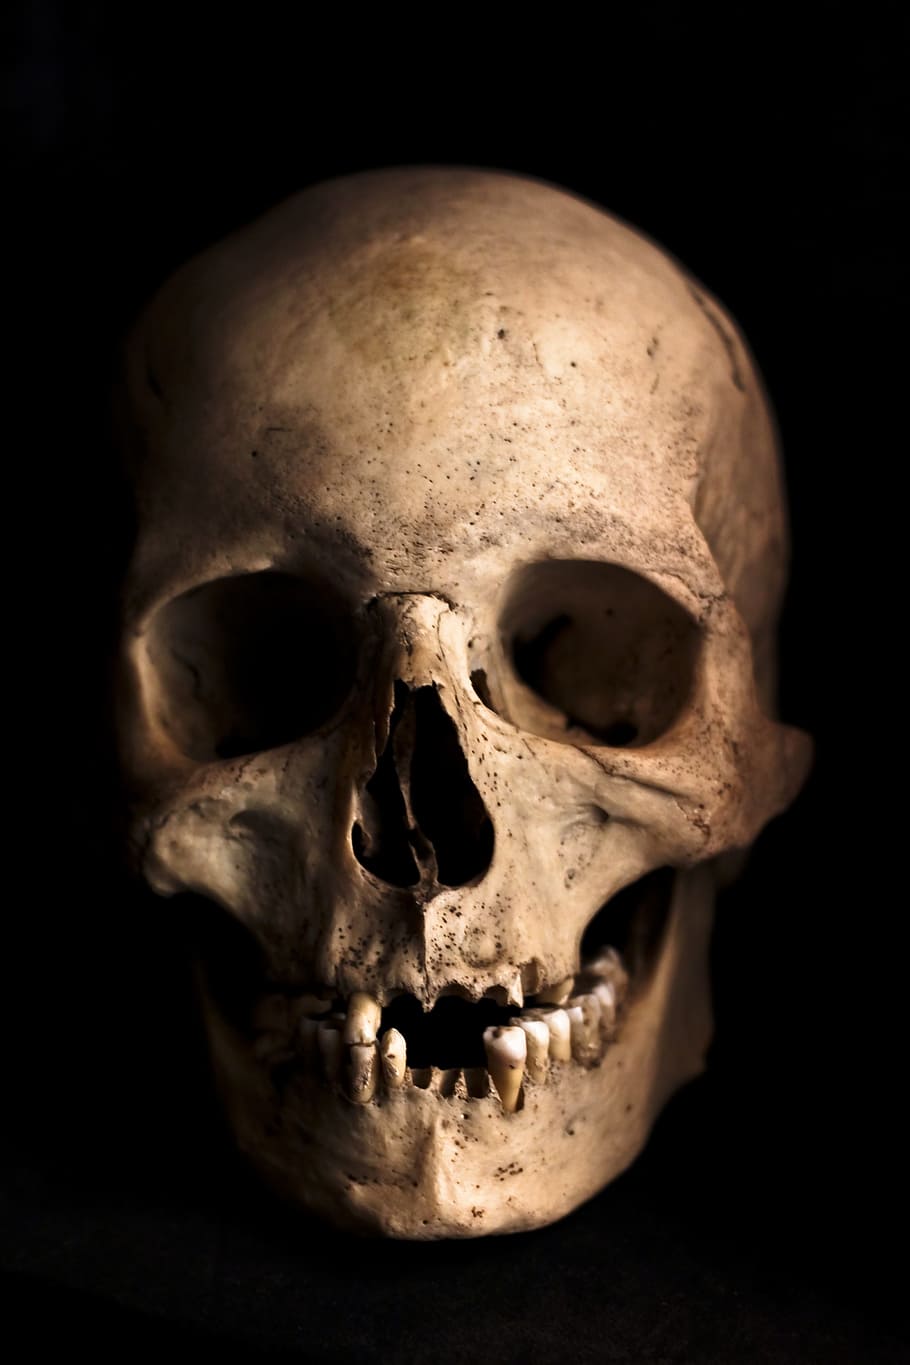 fotografi tengkorak manusia, tengkorak, manusia, kepala, kerangka, tulang, kengerian, anatomi, halloween, kematian